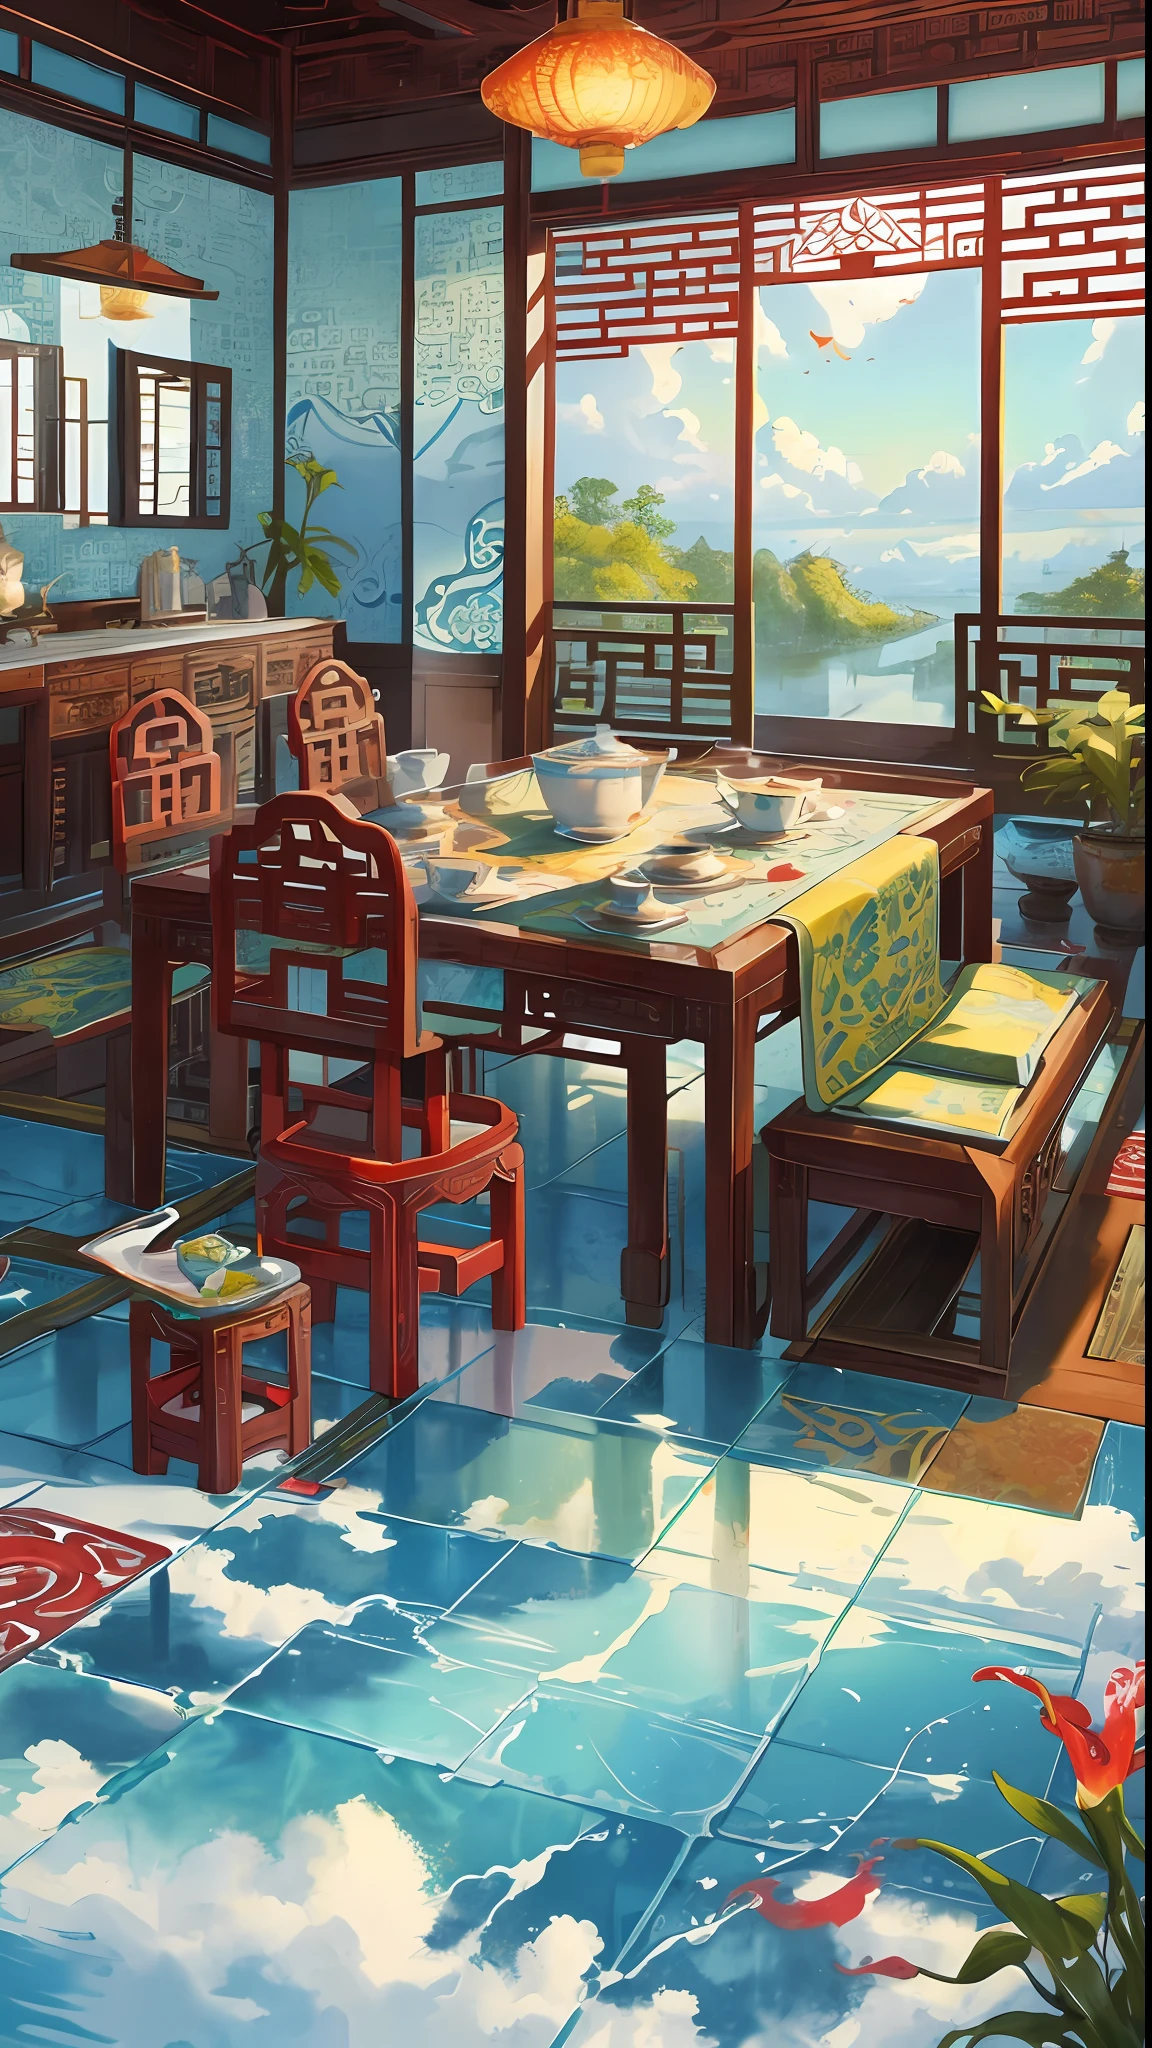 la escena del juego, el antiguo palacio chino está situado sobre las nubes, rodeado de nubes y niebla, majestuoso, azulejos esmaltados, rayos de luz de colores, ((color tinta)),((splash tinta)),((splash tinta) tinta}) ), Obra maestra, alta calidad, Gráficos refinados, alto detalle